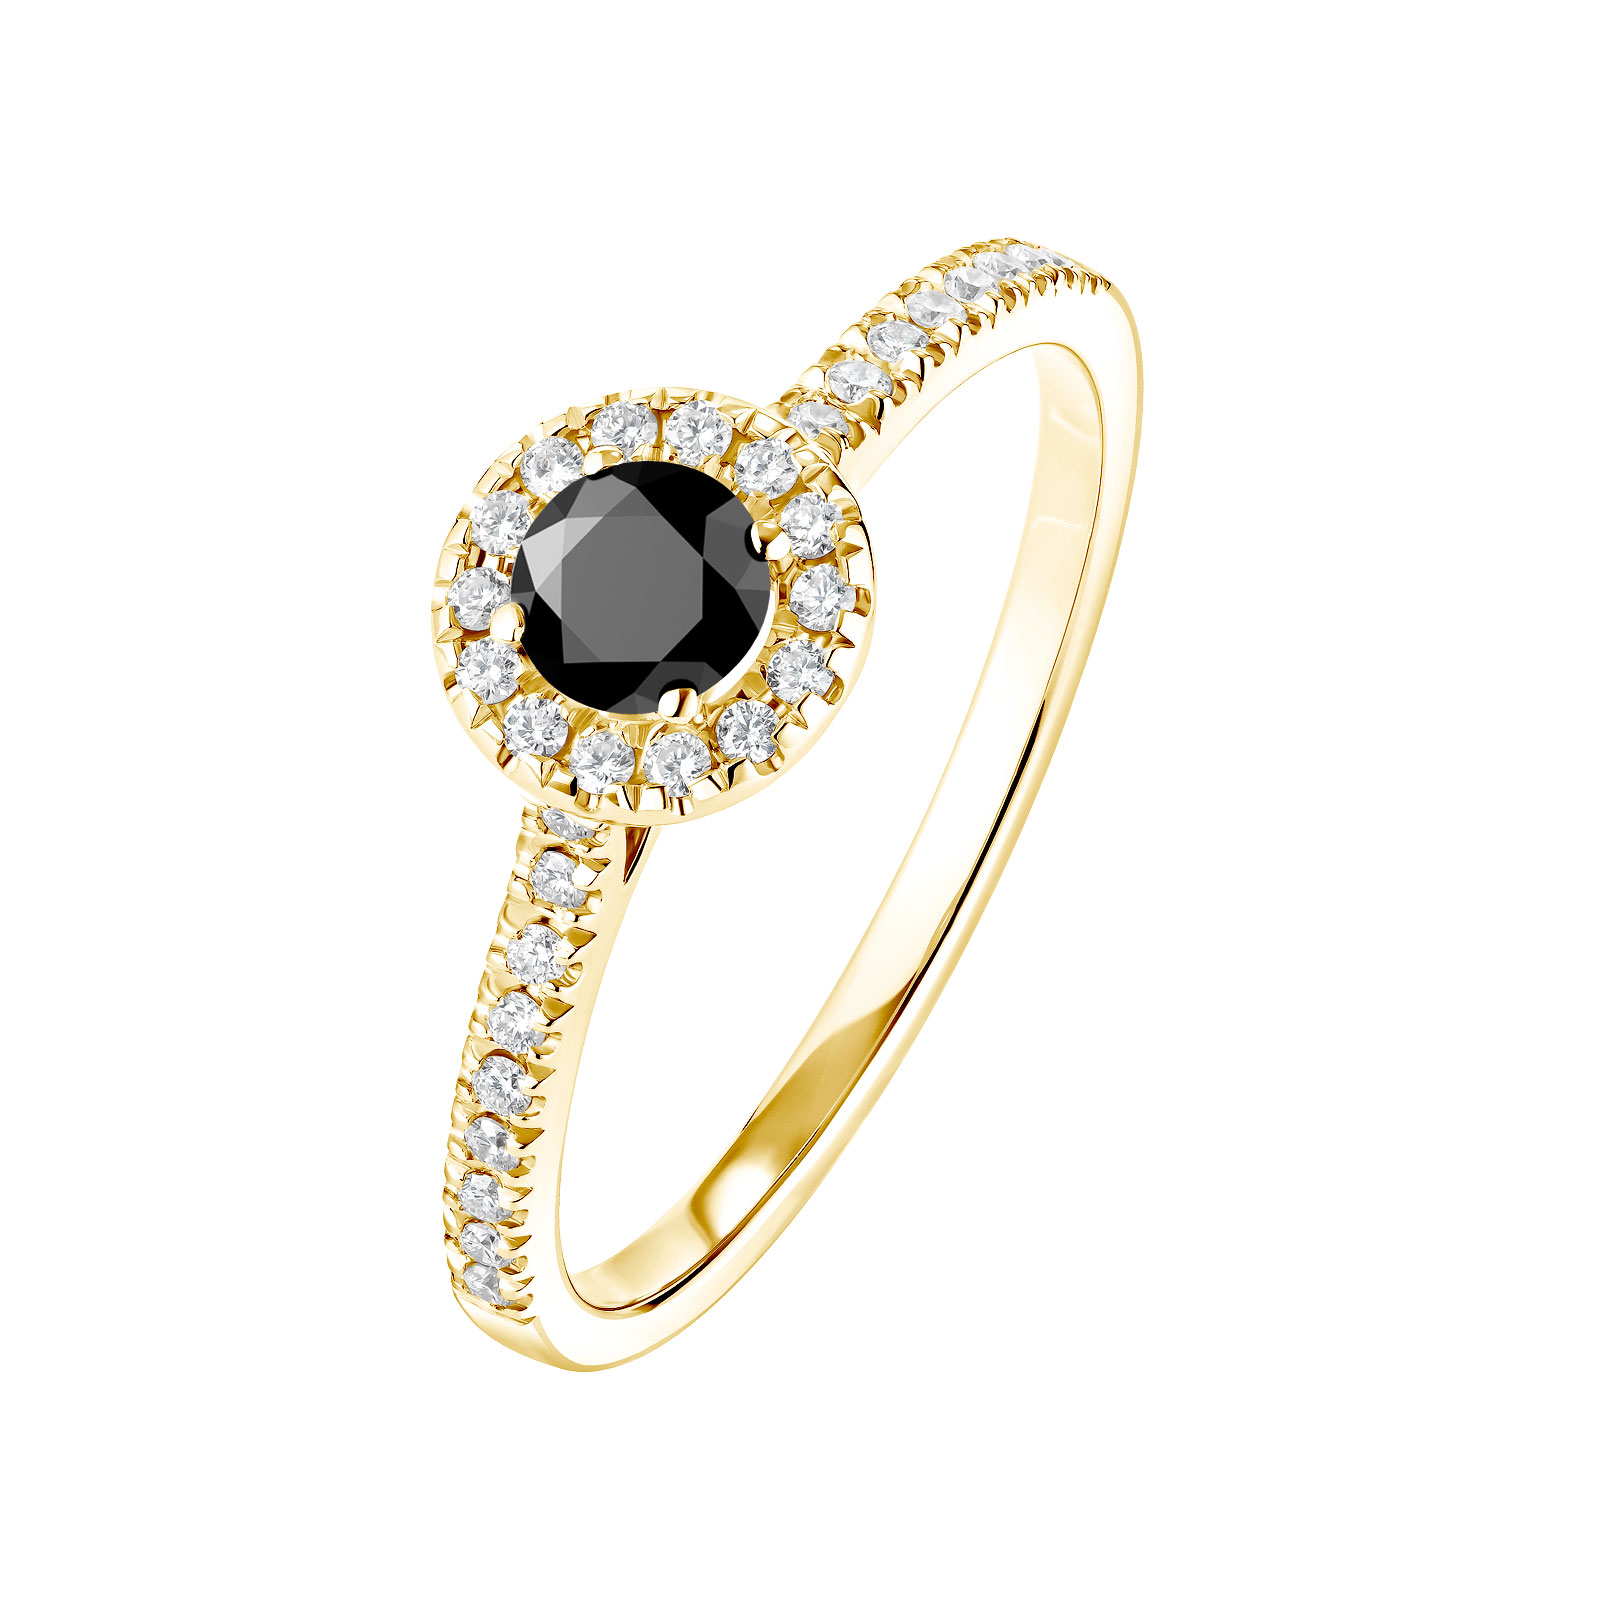 Bague Or jaune Spinelle noir et diamants Rétromantique S Pavée 1